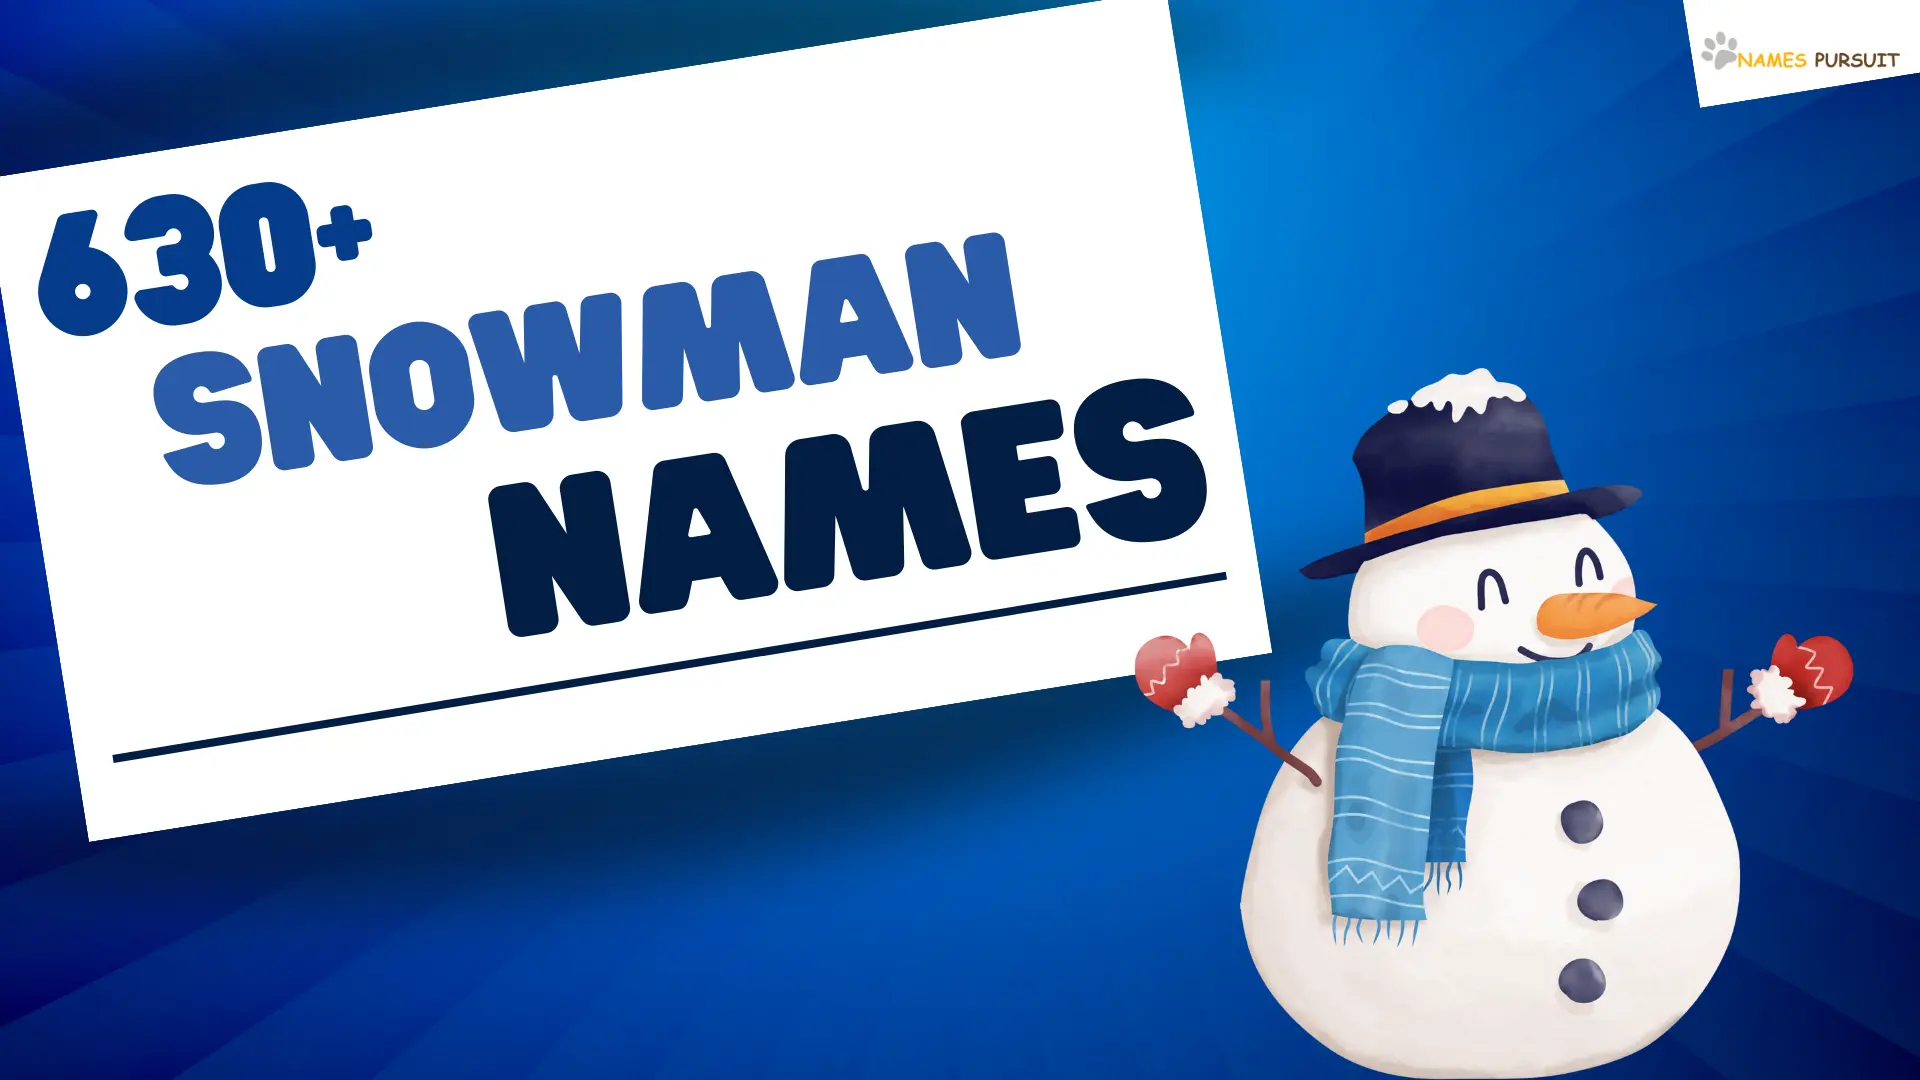 Snowman Names